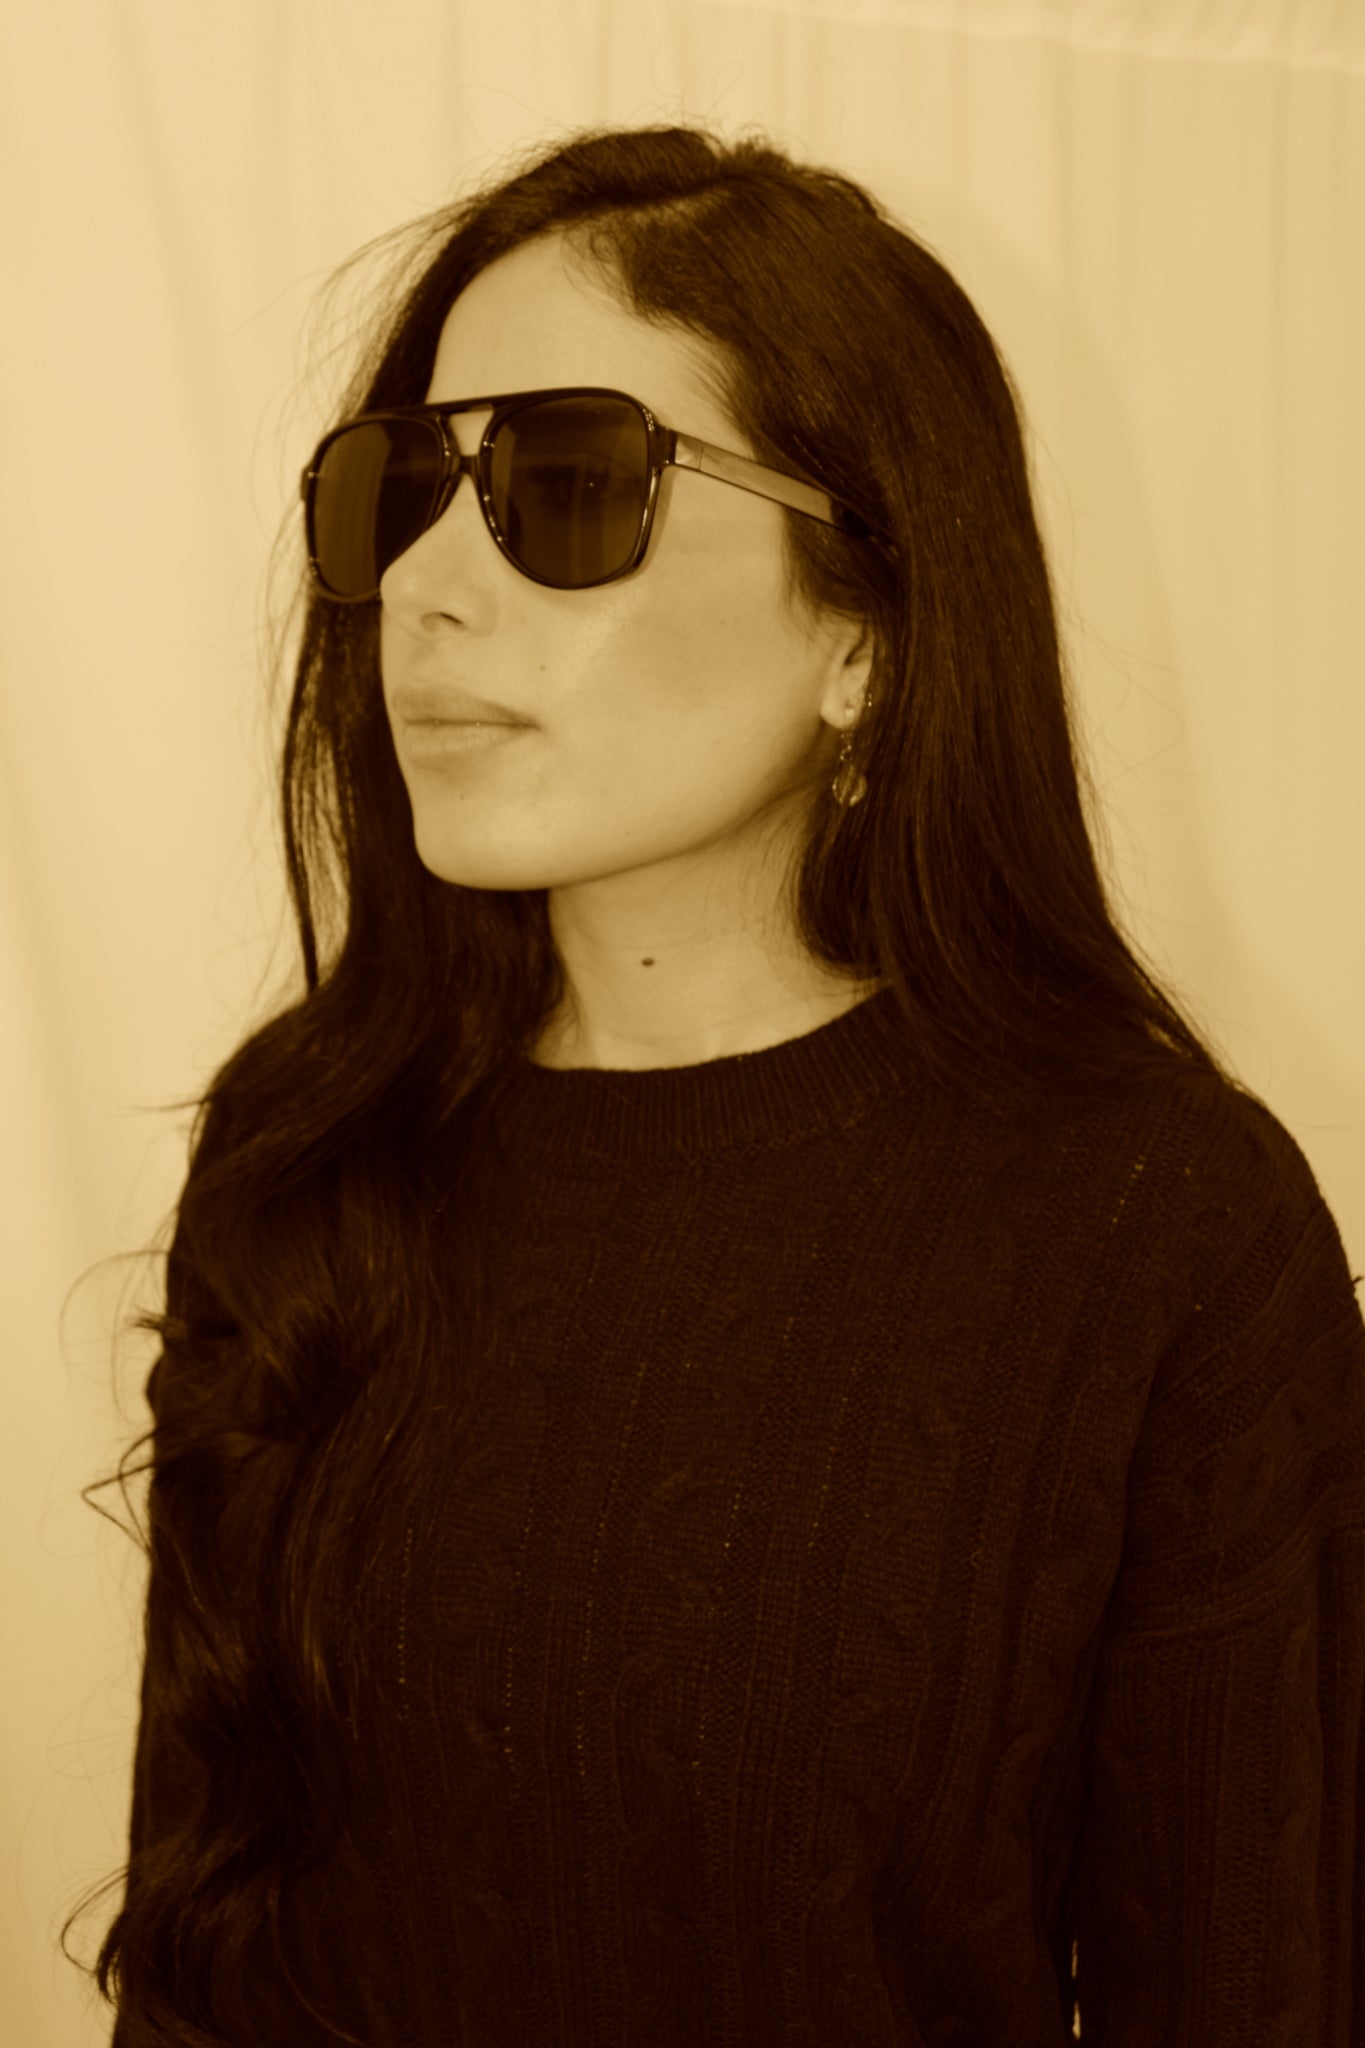 La Californienne Sunglasses in Black